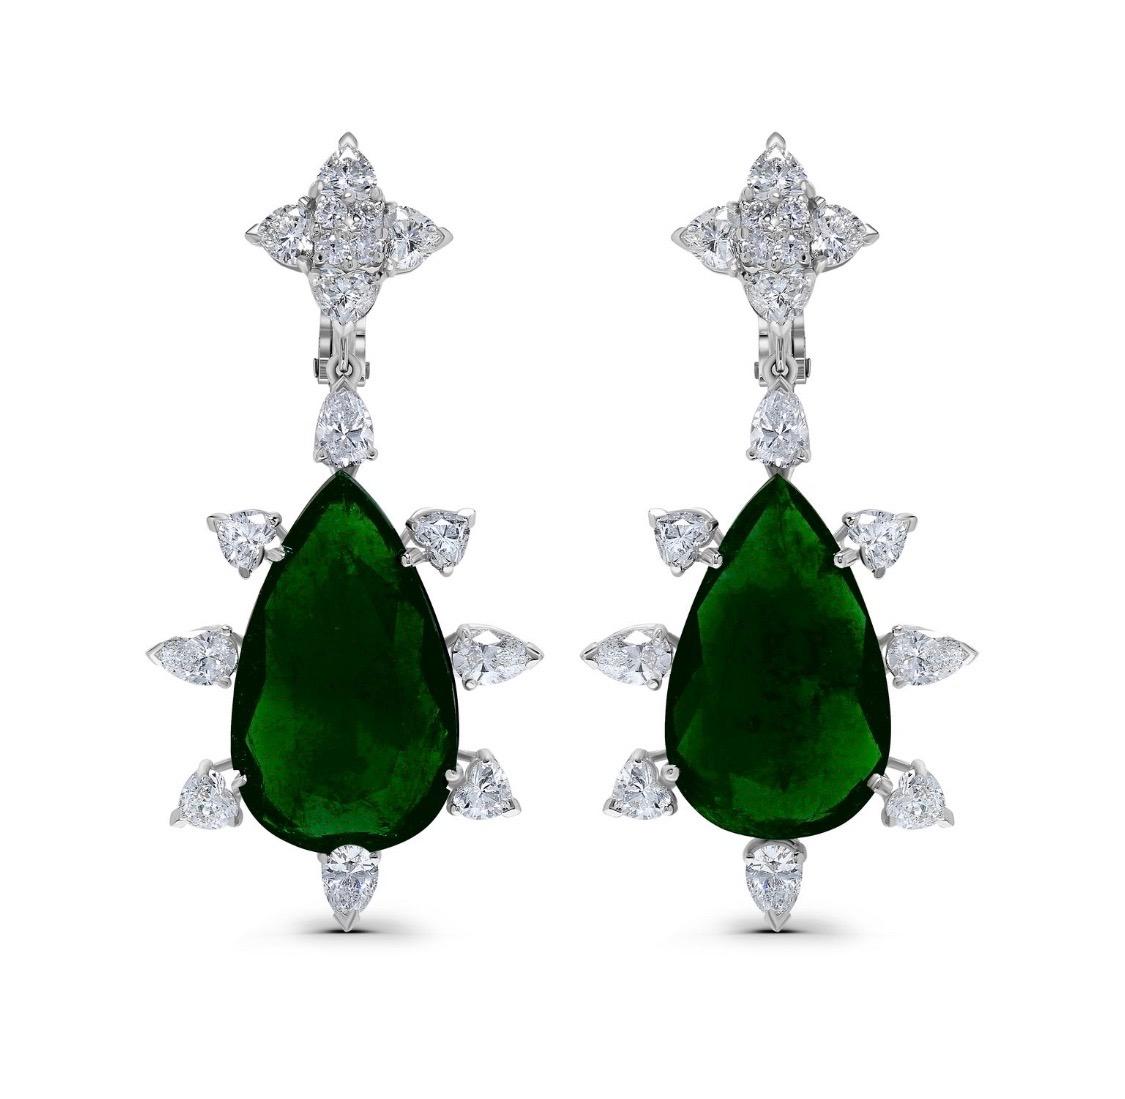 Aus der Emilio Jewelry Vault, präsentiert zwei atemberaubende Mitte Stein kolumbianischen Smaragden:
Smaragde: Zertifizierte kolumbianische Smaragde 26,60  Karat sind lebendige grüne Farbe mit ausgezeichnetem Kristall und ausgezeichnete Transparenz.